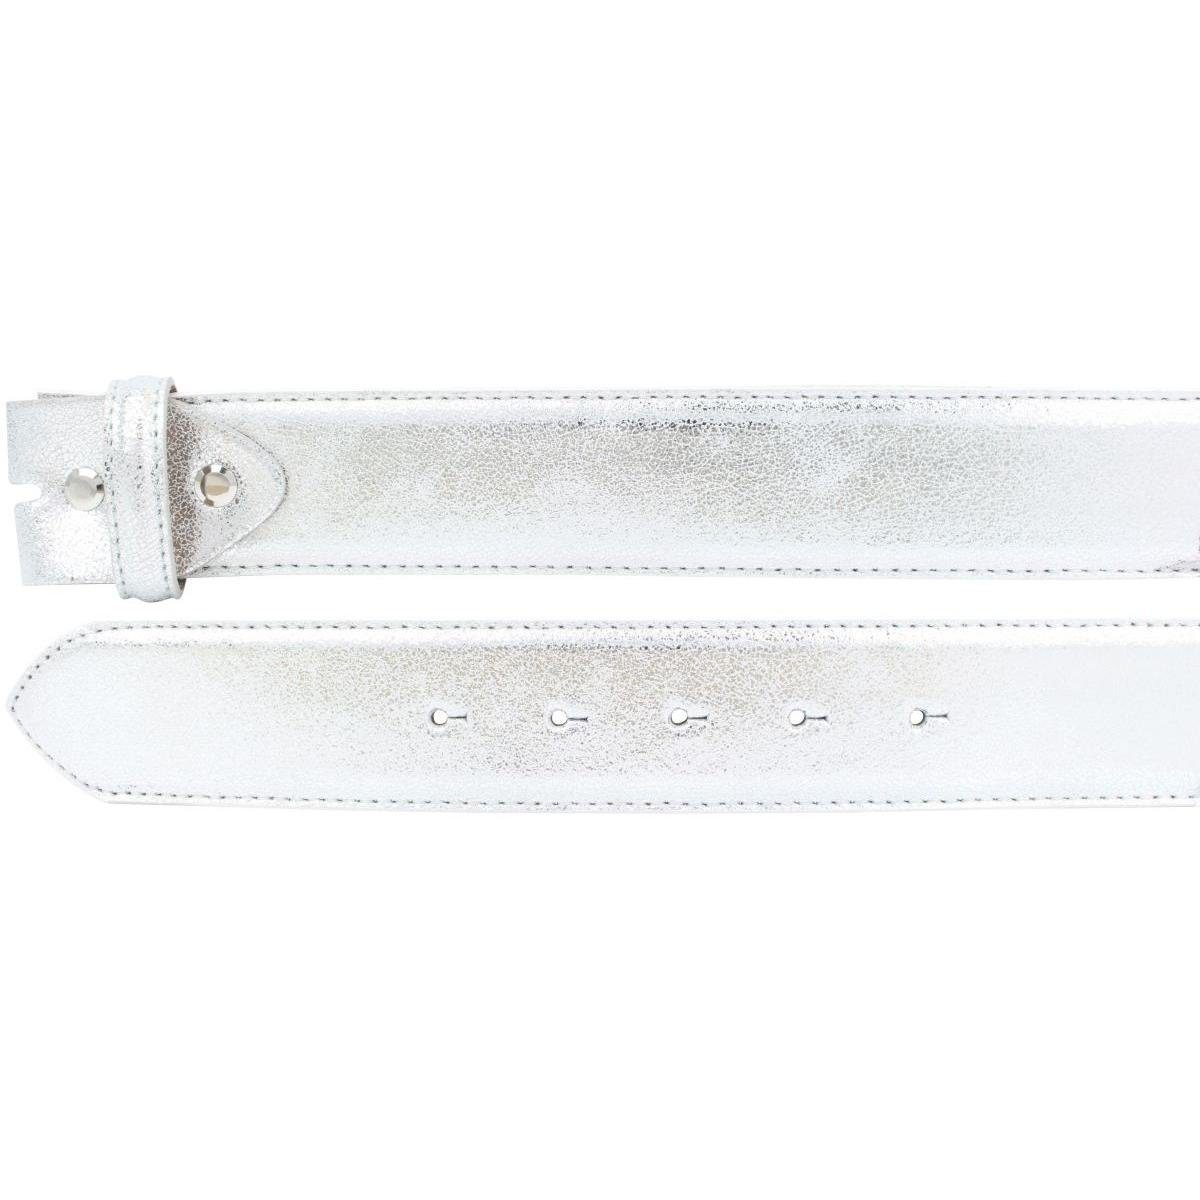 BELTINGER Ledergürtel Hochwertiger Gürtel Echt Meta Leder cm 4 Schnalle Metall-Optik - Silber ohne